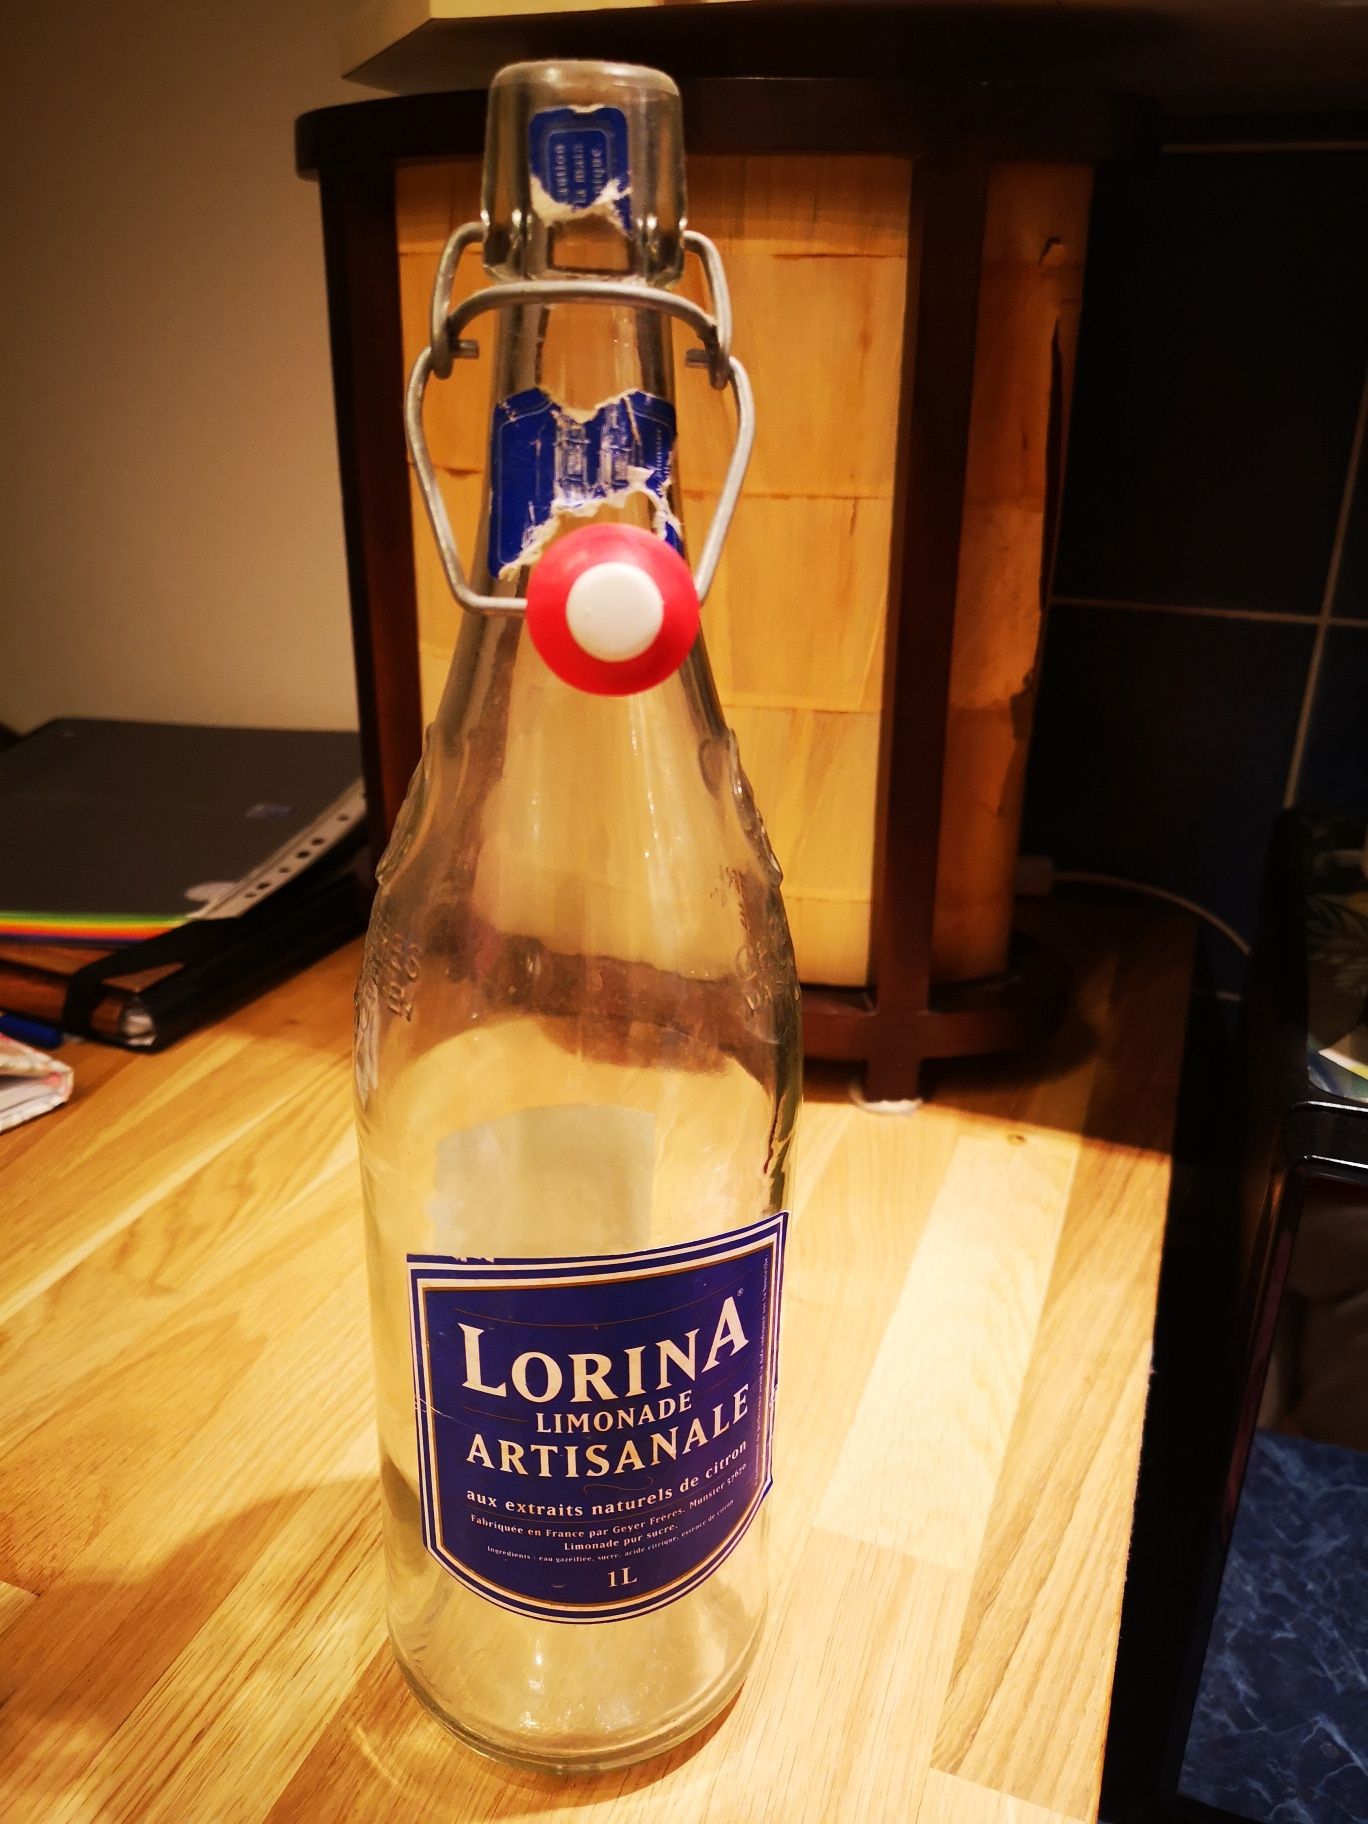 LORINA lemoniada artisanale butelka rustykalna francuska